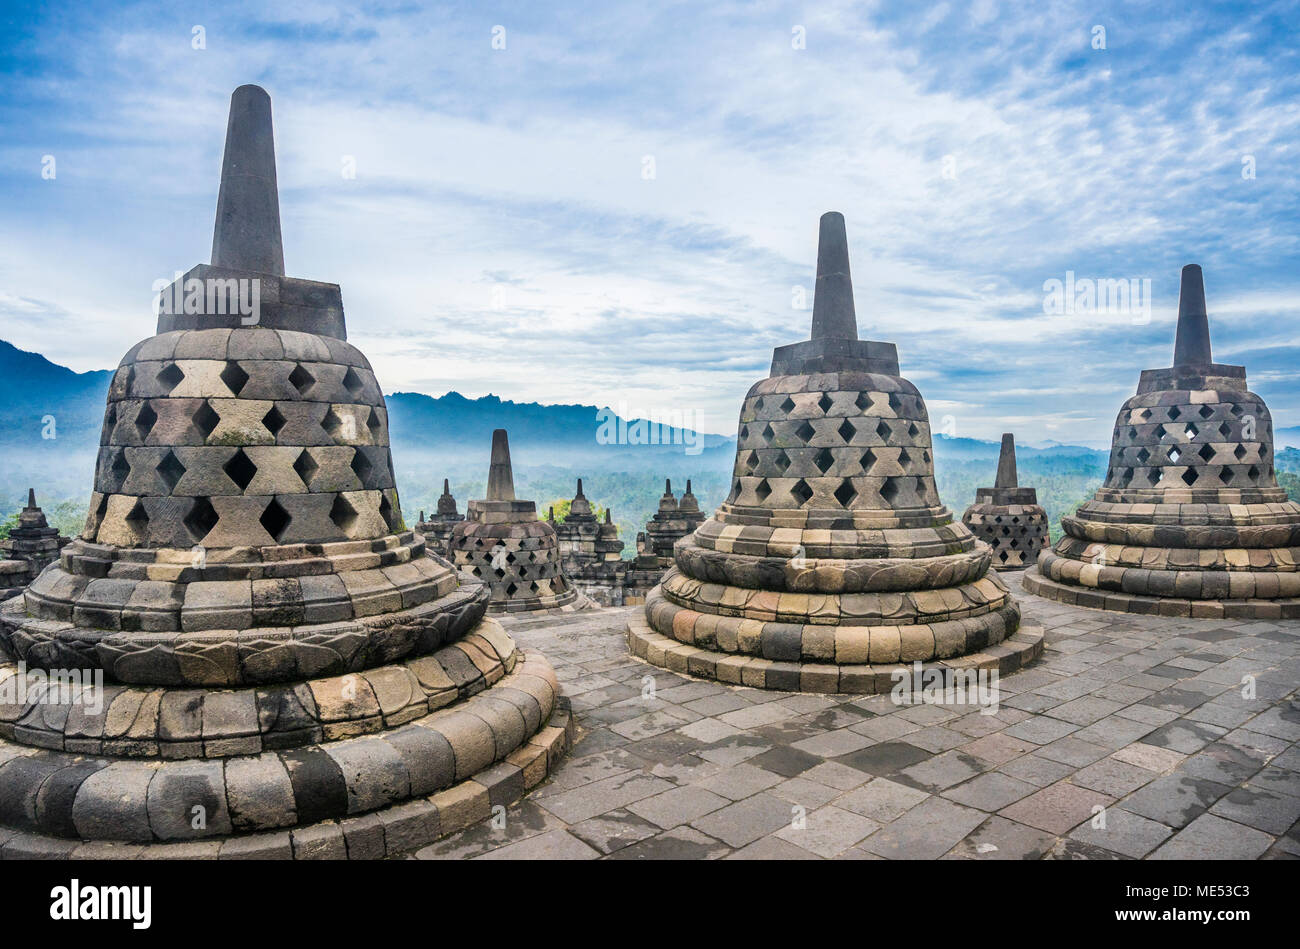 Les stupas perforés contenant des statues de Bouddha sur la circulaire haut terrasses de 9e siècle Borobudur temple bouddhiste, le centre de Java, Indonésie Banque D'Images